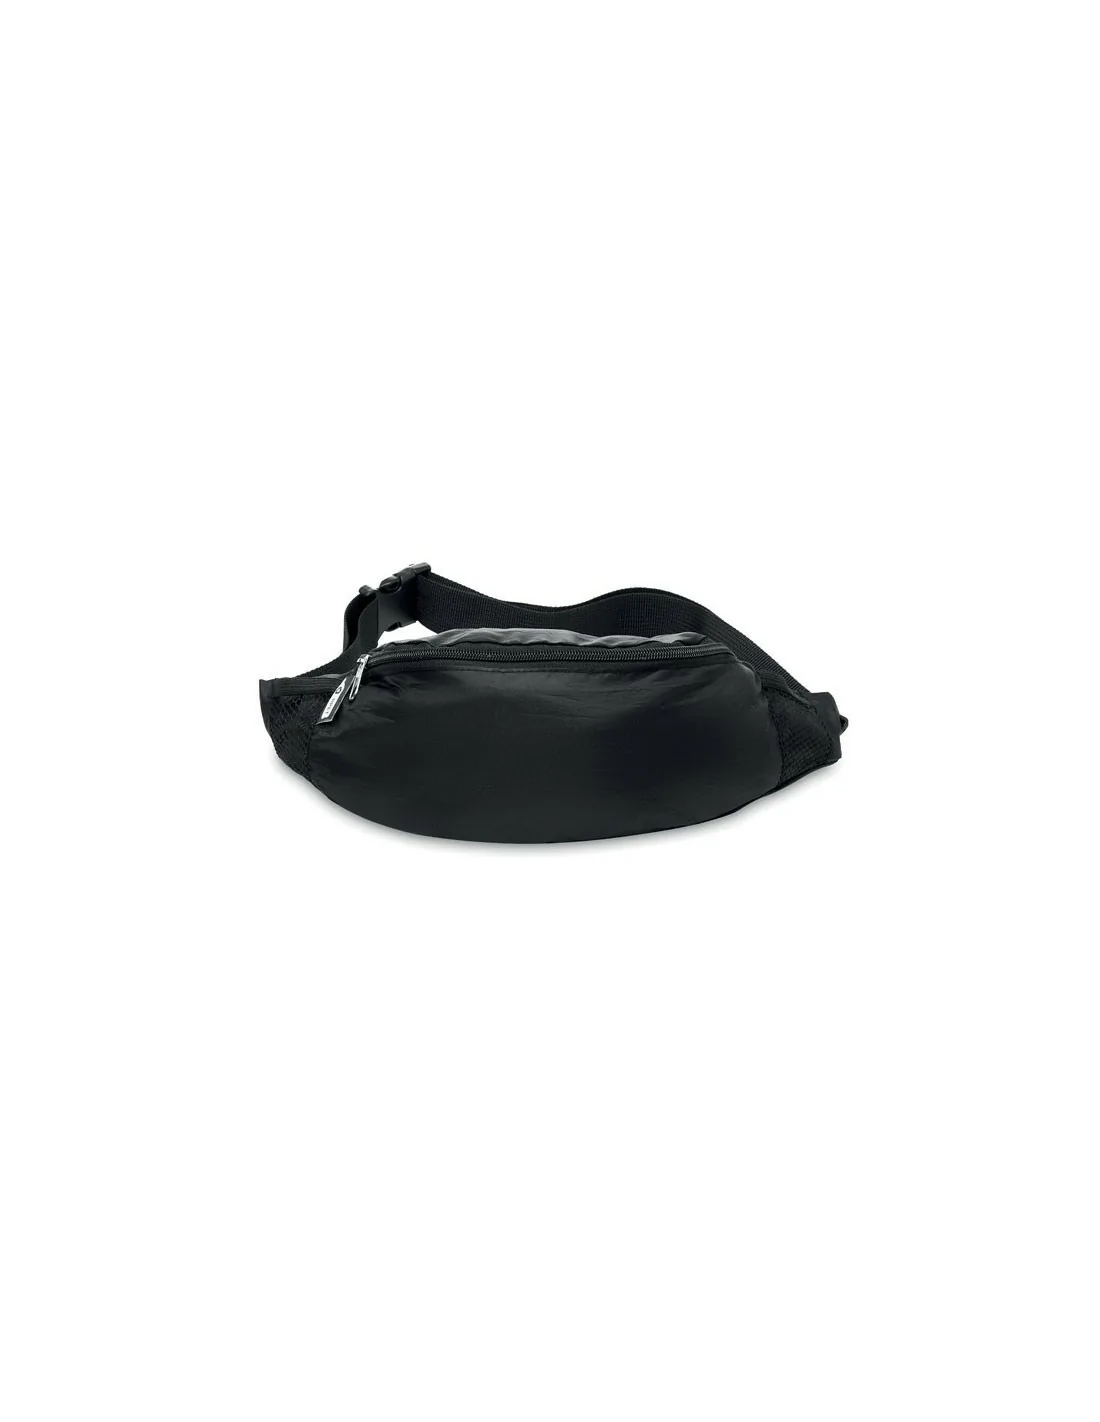 Riñonera de pierna con protección RFID colección Dark – VOGART Bags